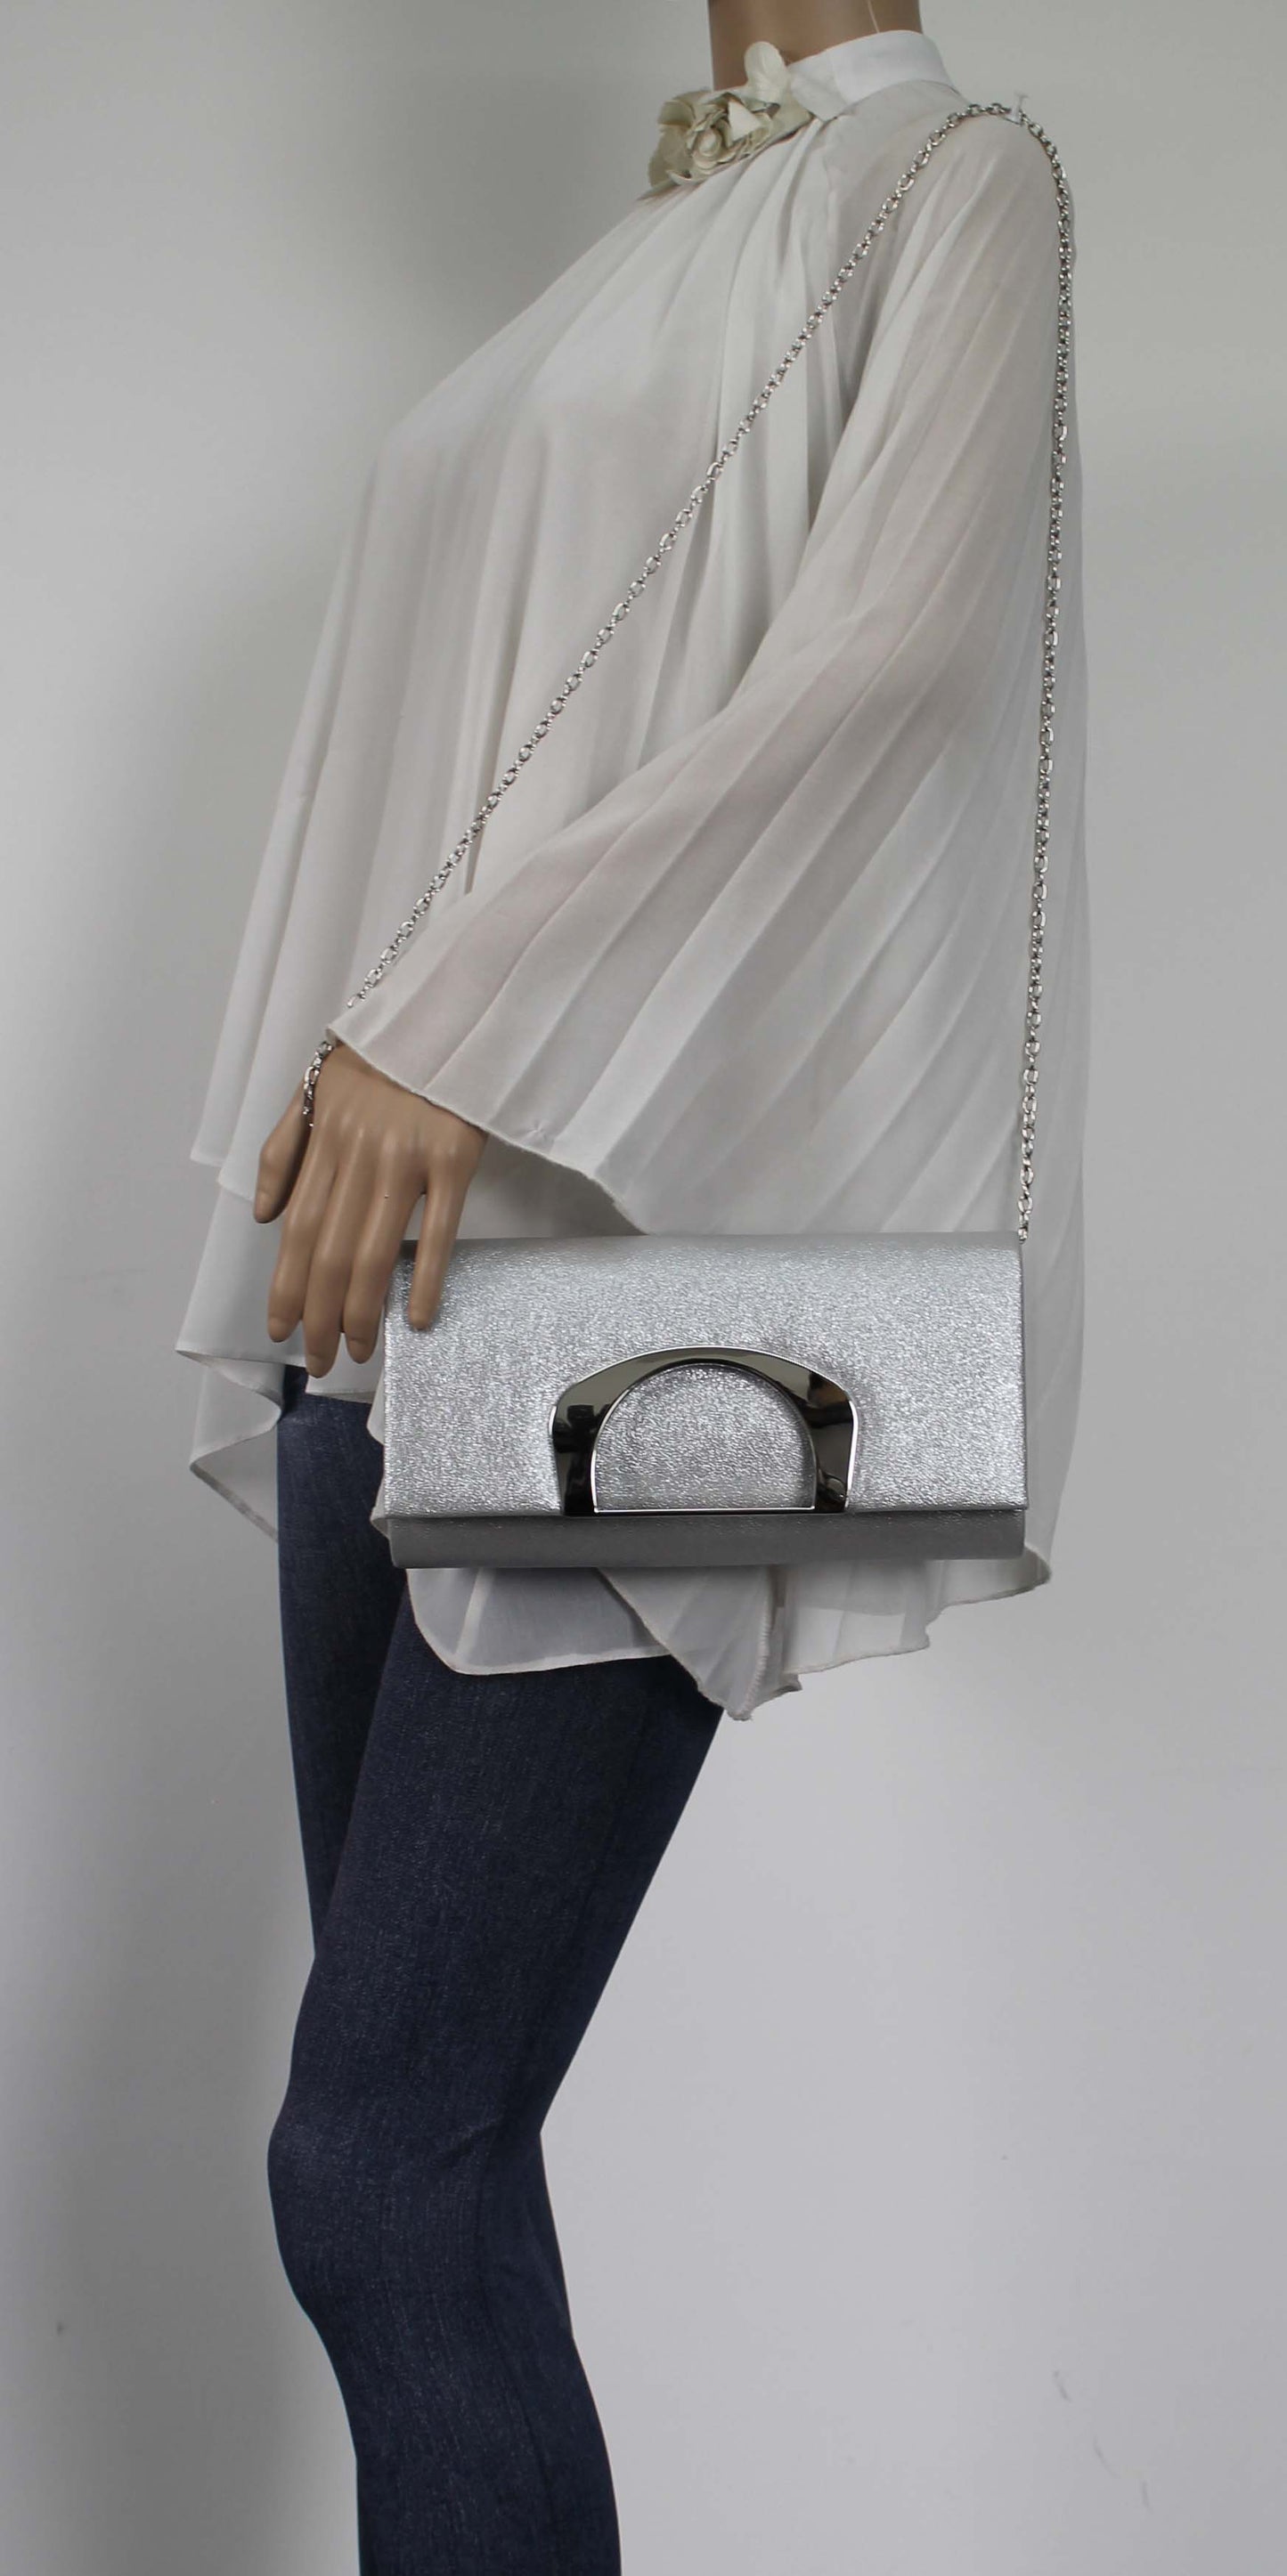 SWANKYSWANS Marcie Clutch Bag Silver Cute Cheap Clutch Bag For Weddings School and Work